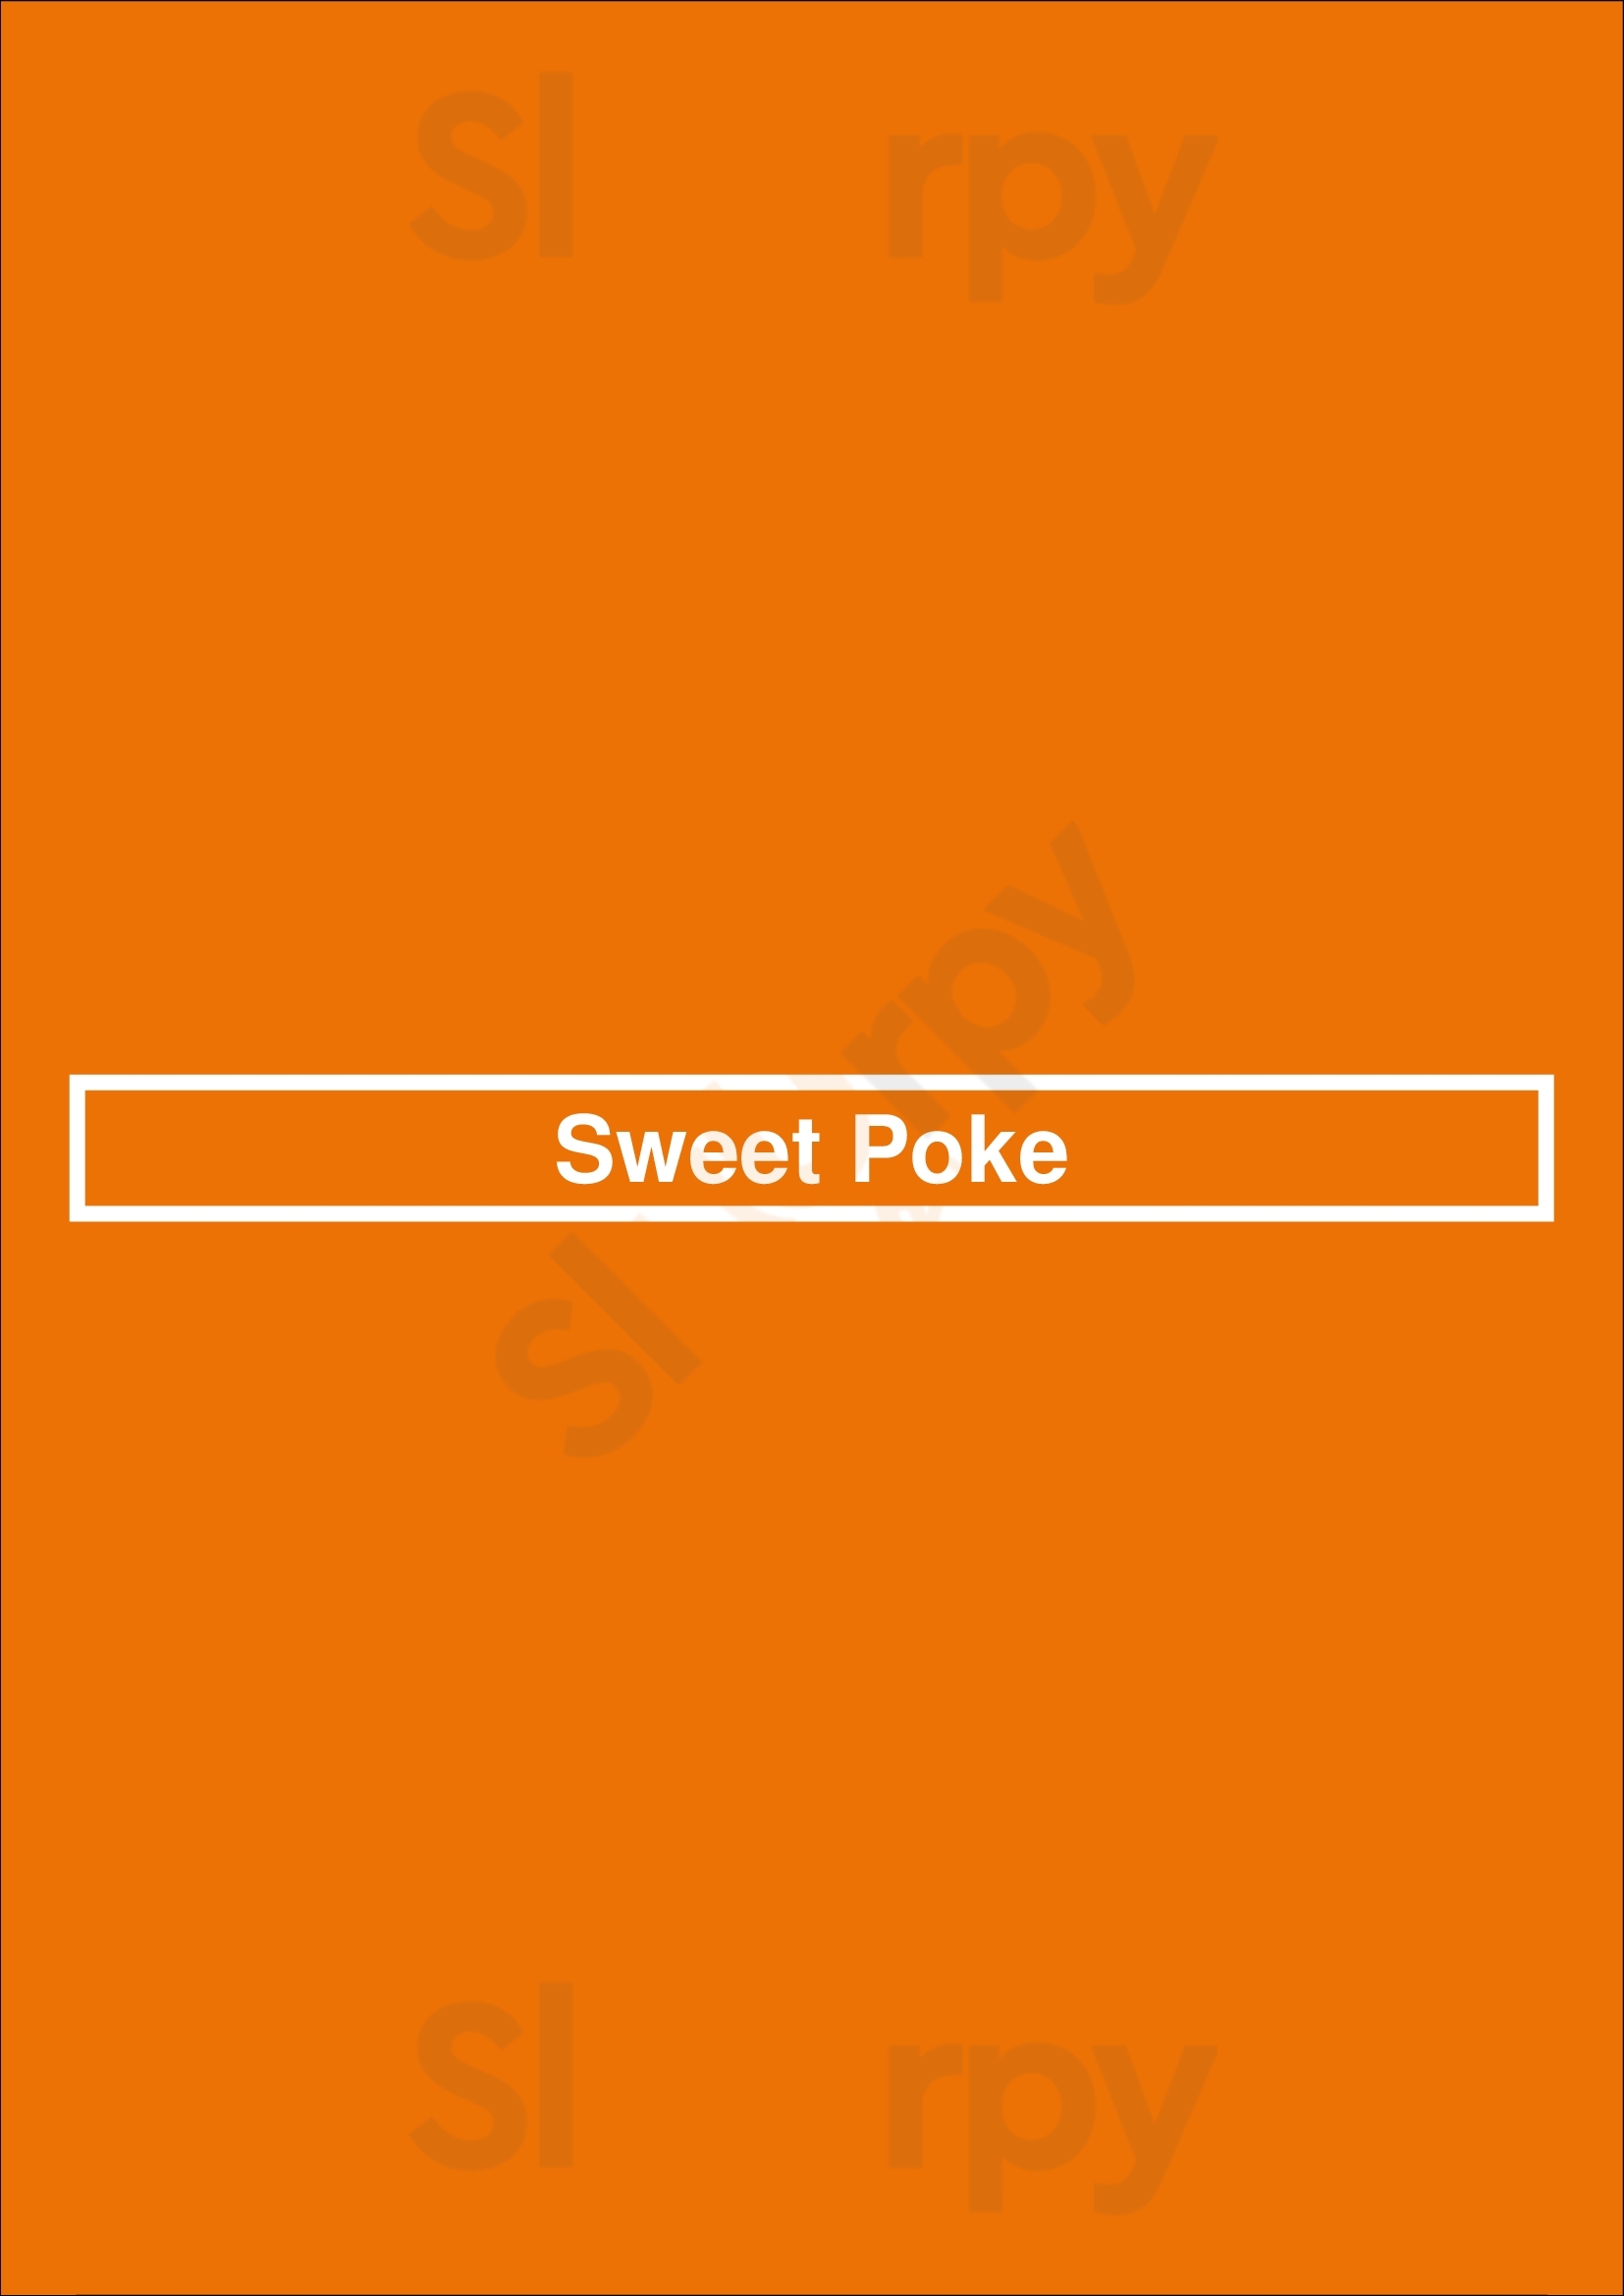 Sweet Poke Las Vegas Menu - 1